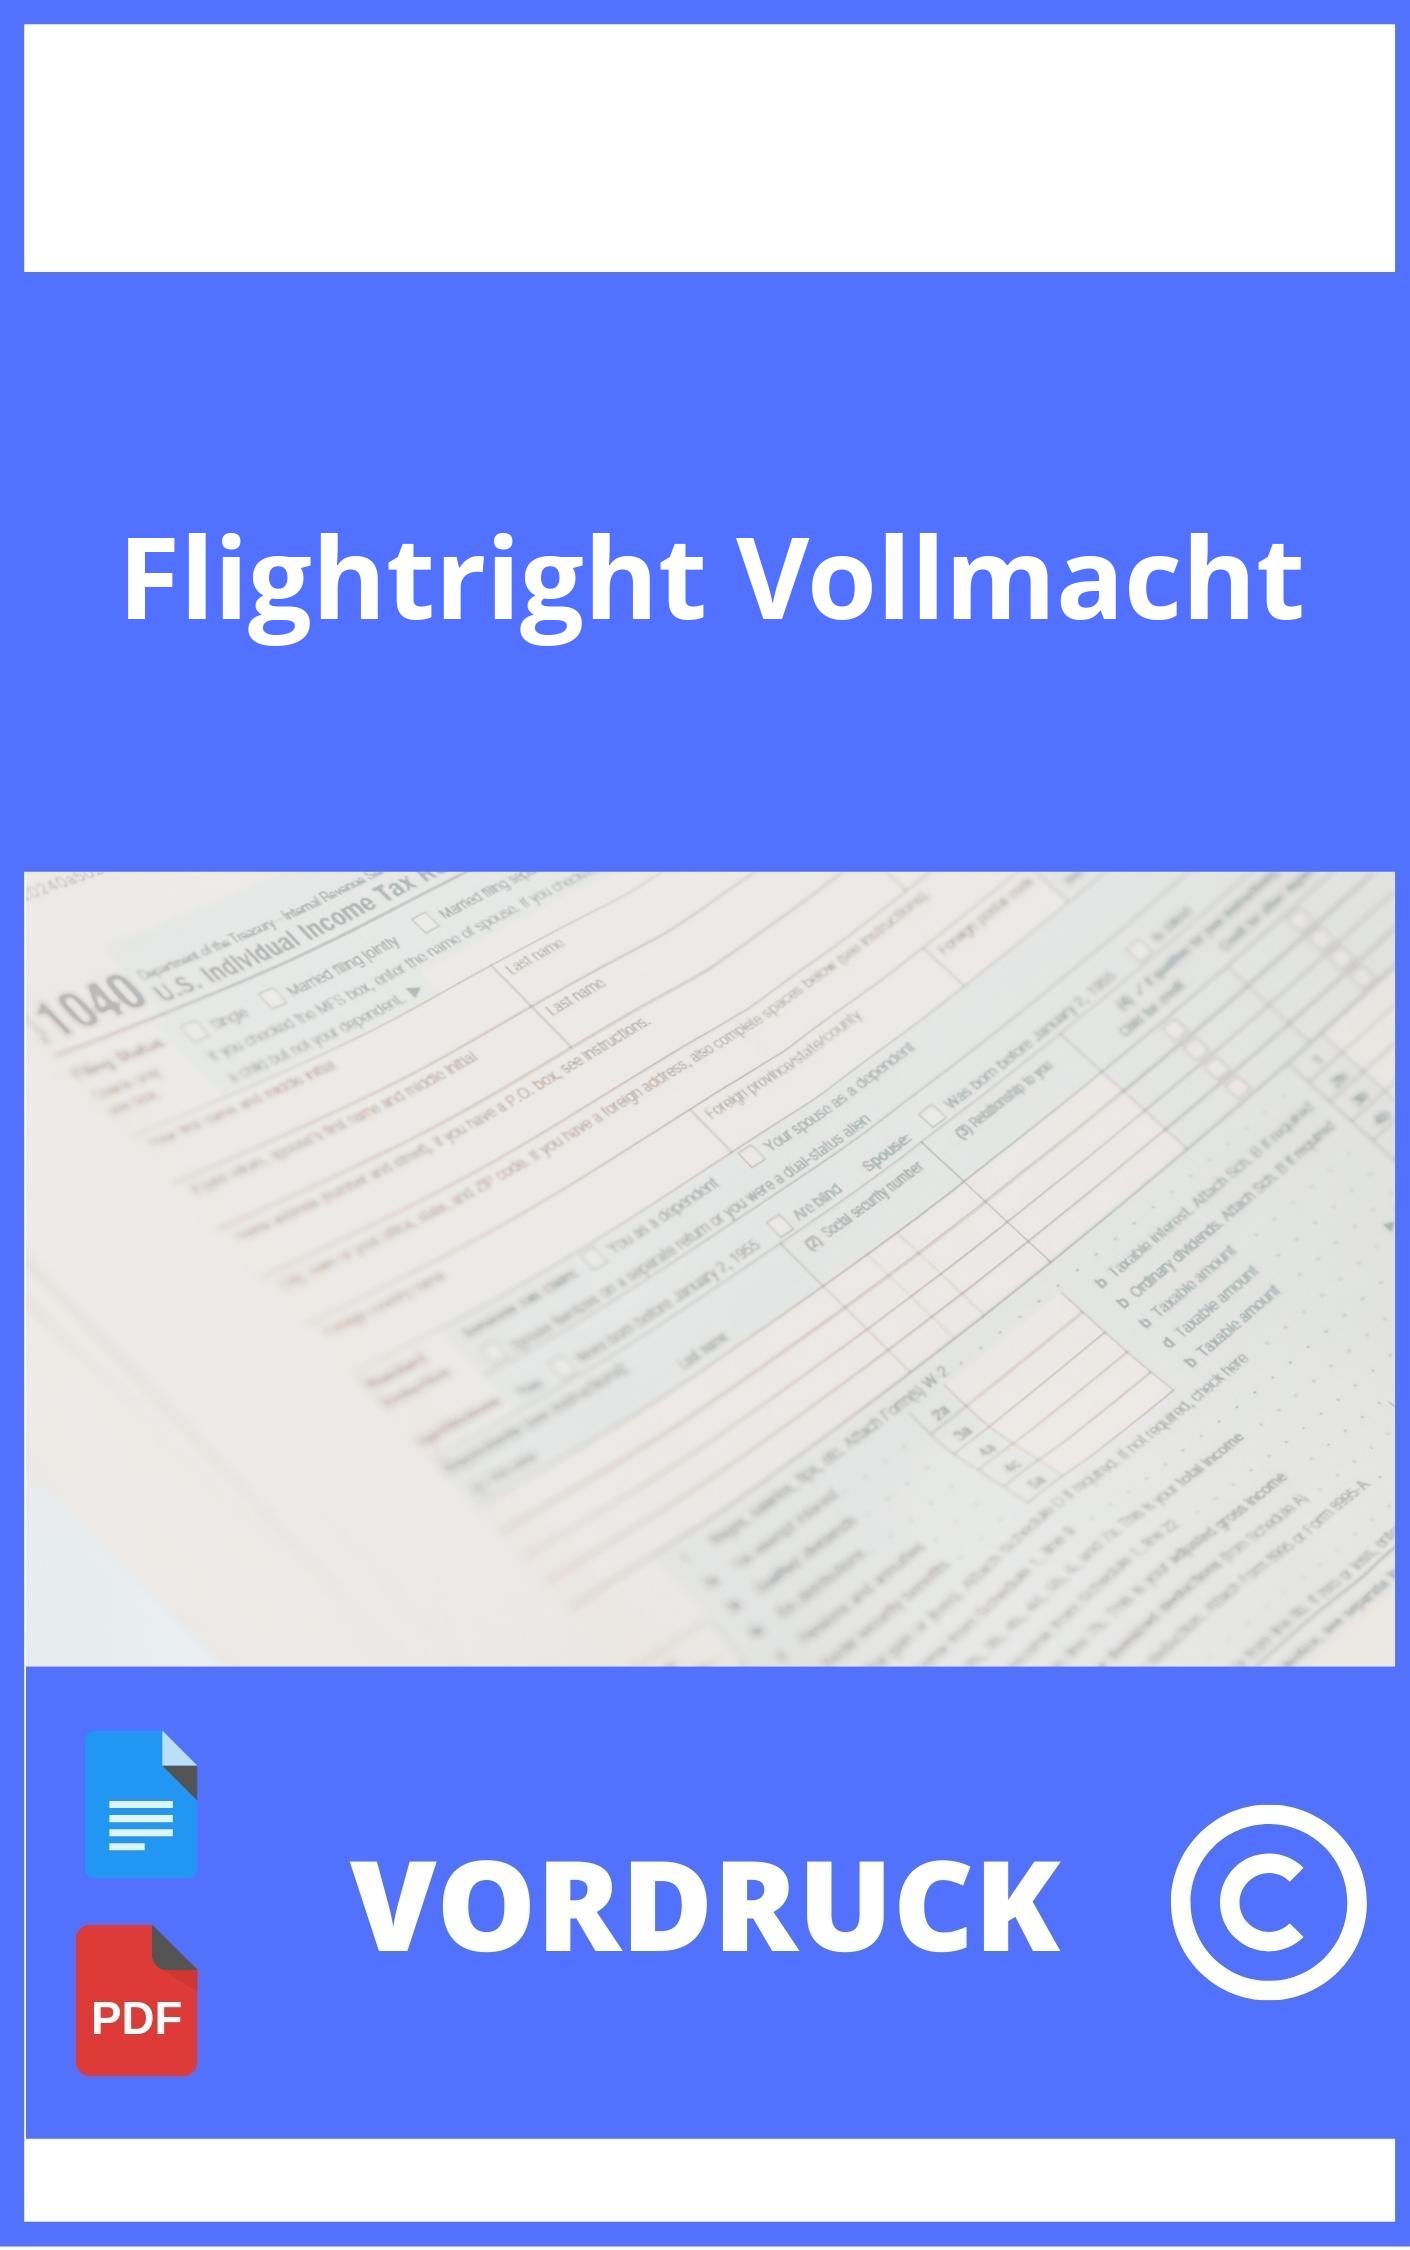 Flightright Vollmacht Vordruck